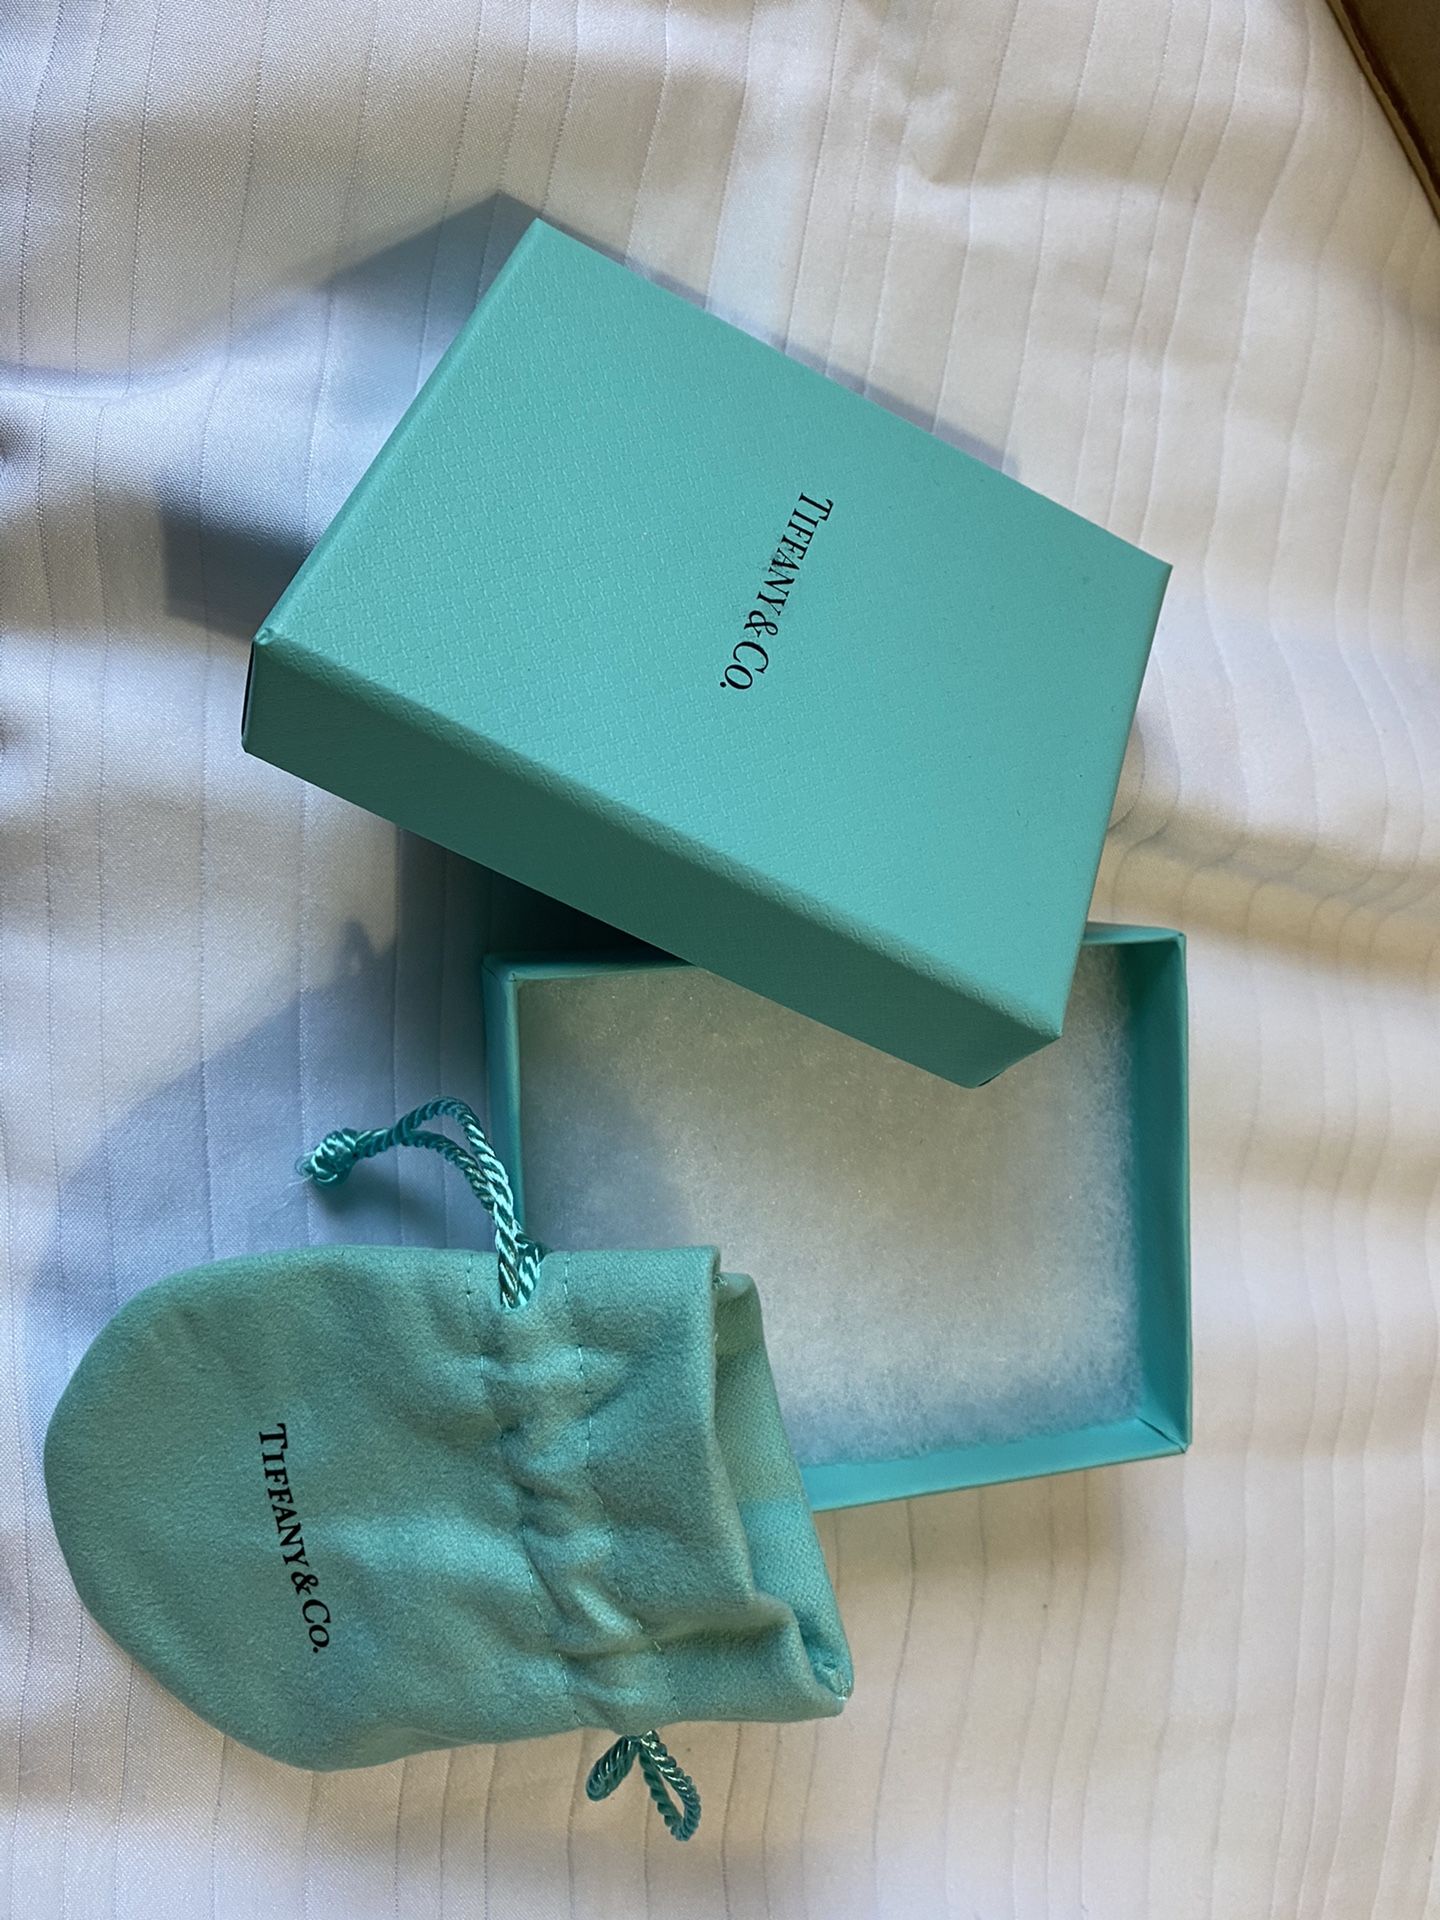 Tiffany box and bag